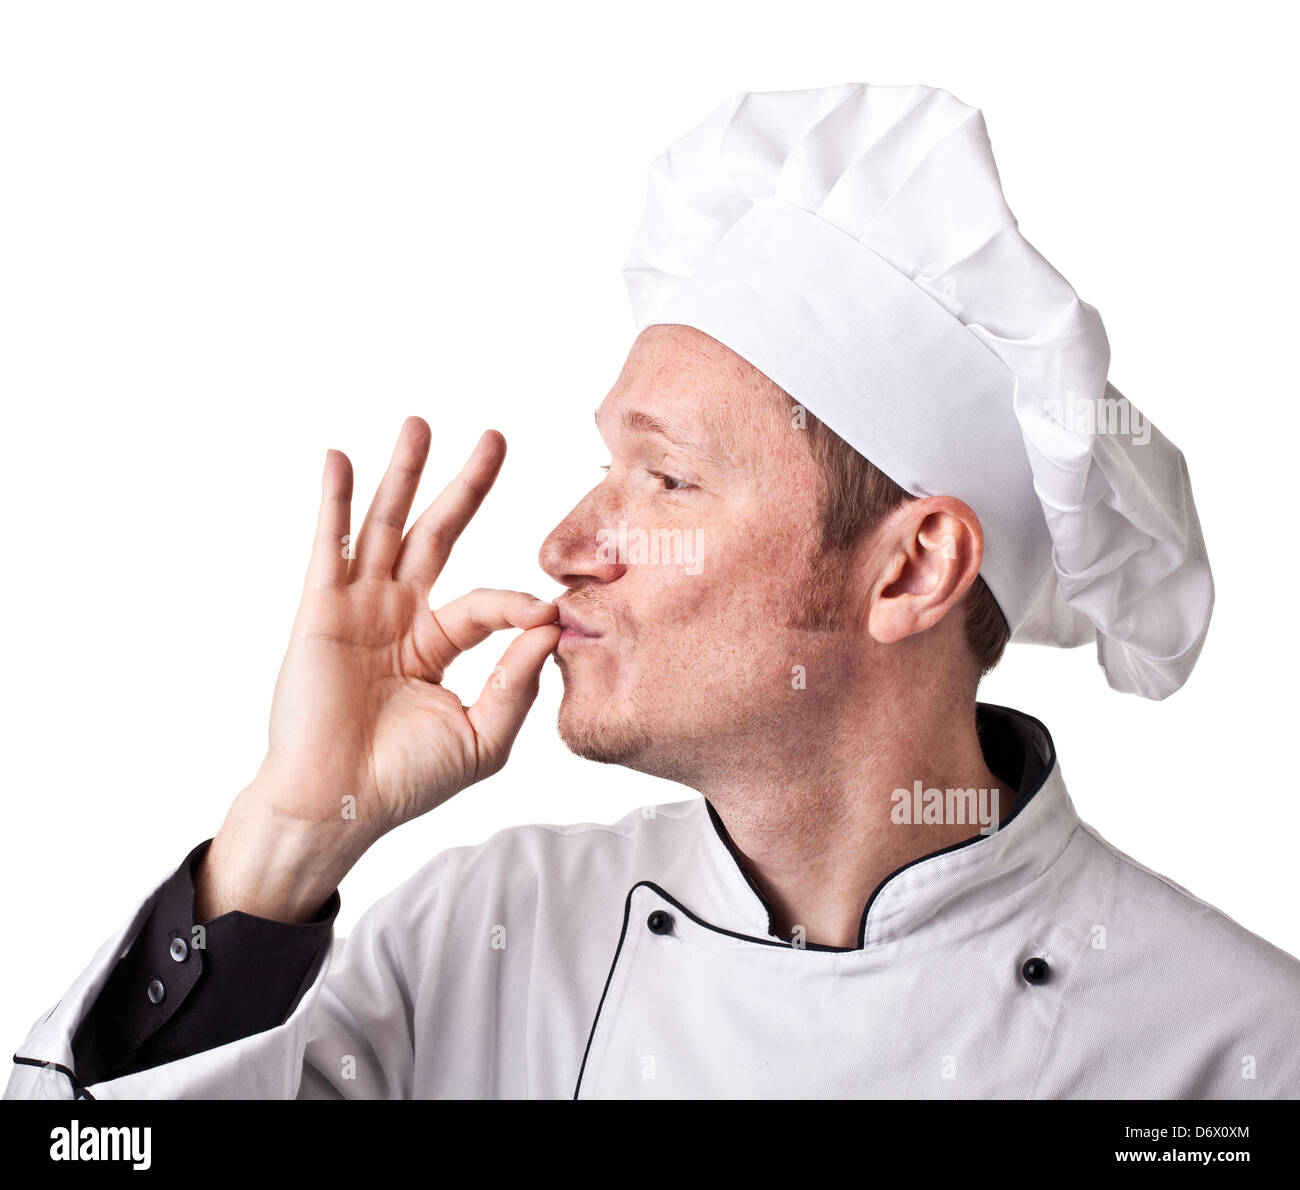 Retrato del hombre caucásico con uniforme de chef Foto de stock